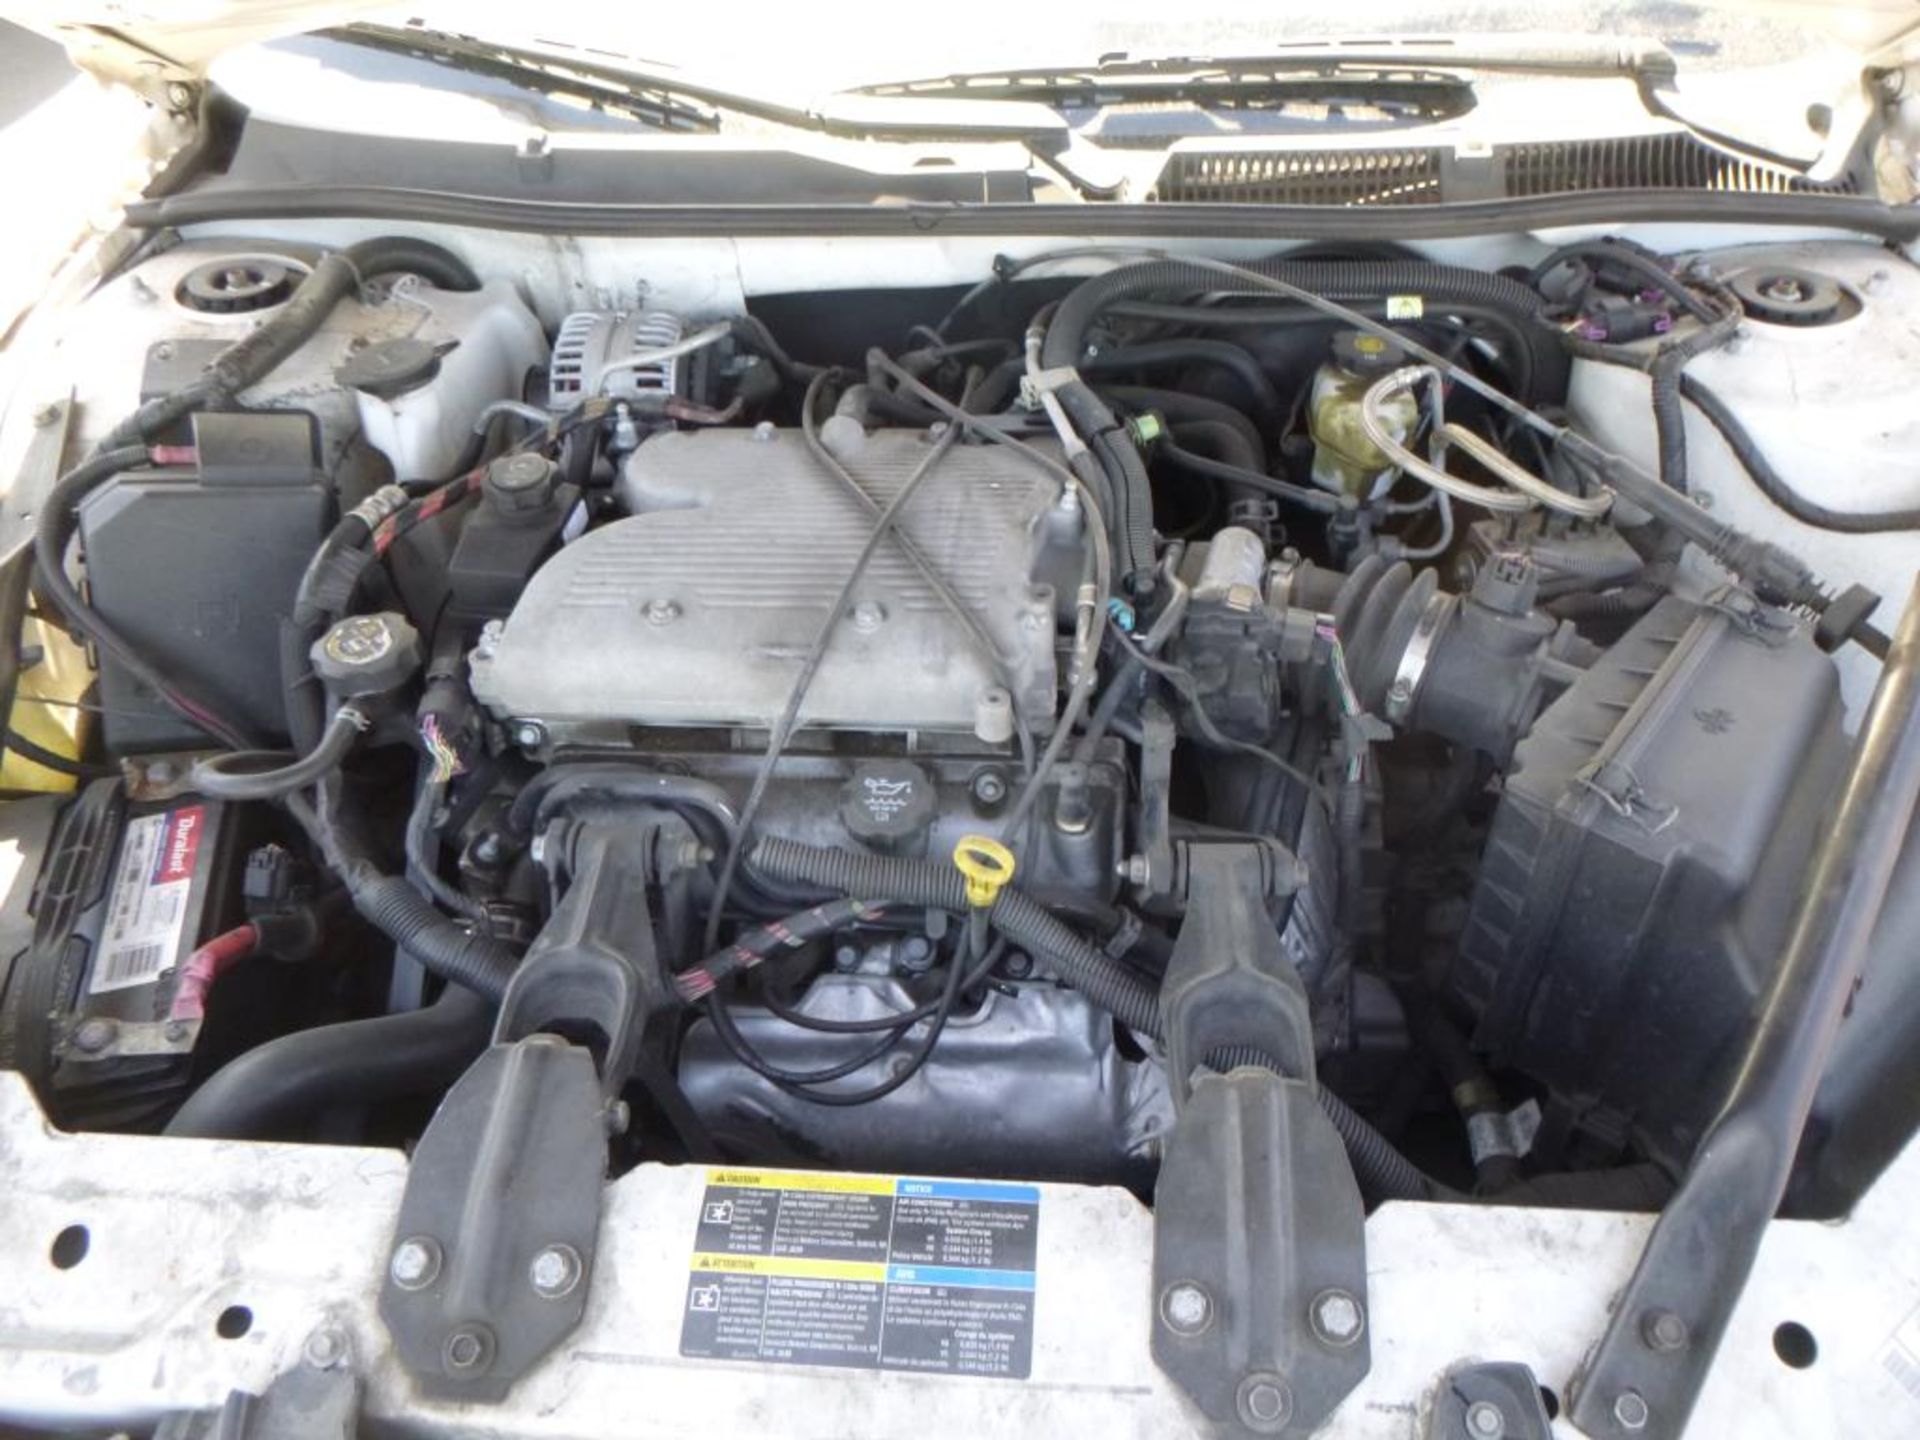 2007 Chevrolet Impala - Image 5 of 14